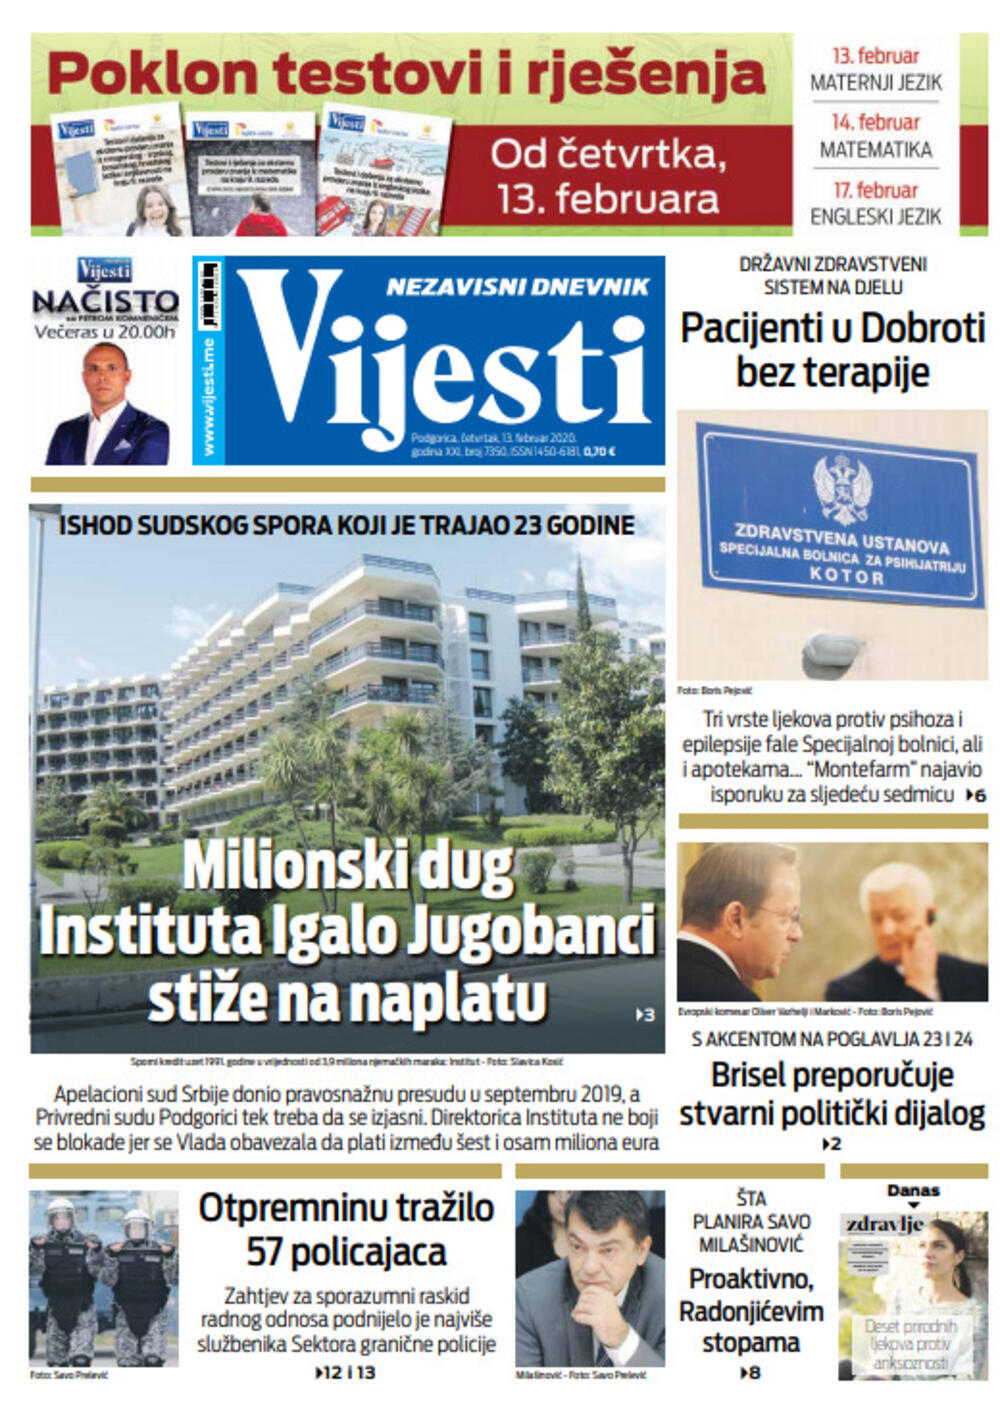 Naslovna strana "Vijesti" za 13. februar 2020. godine, Foto: "Vijesti"